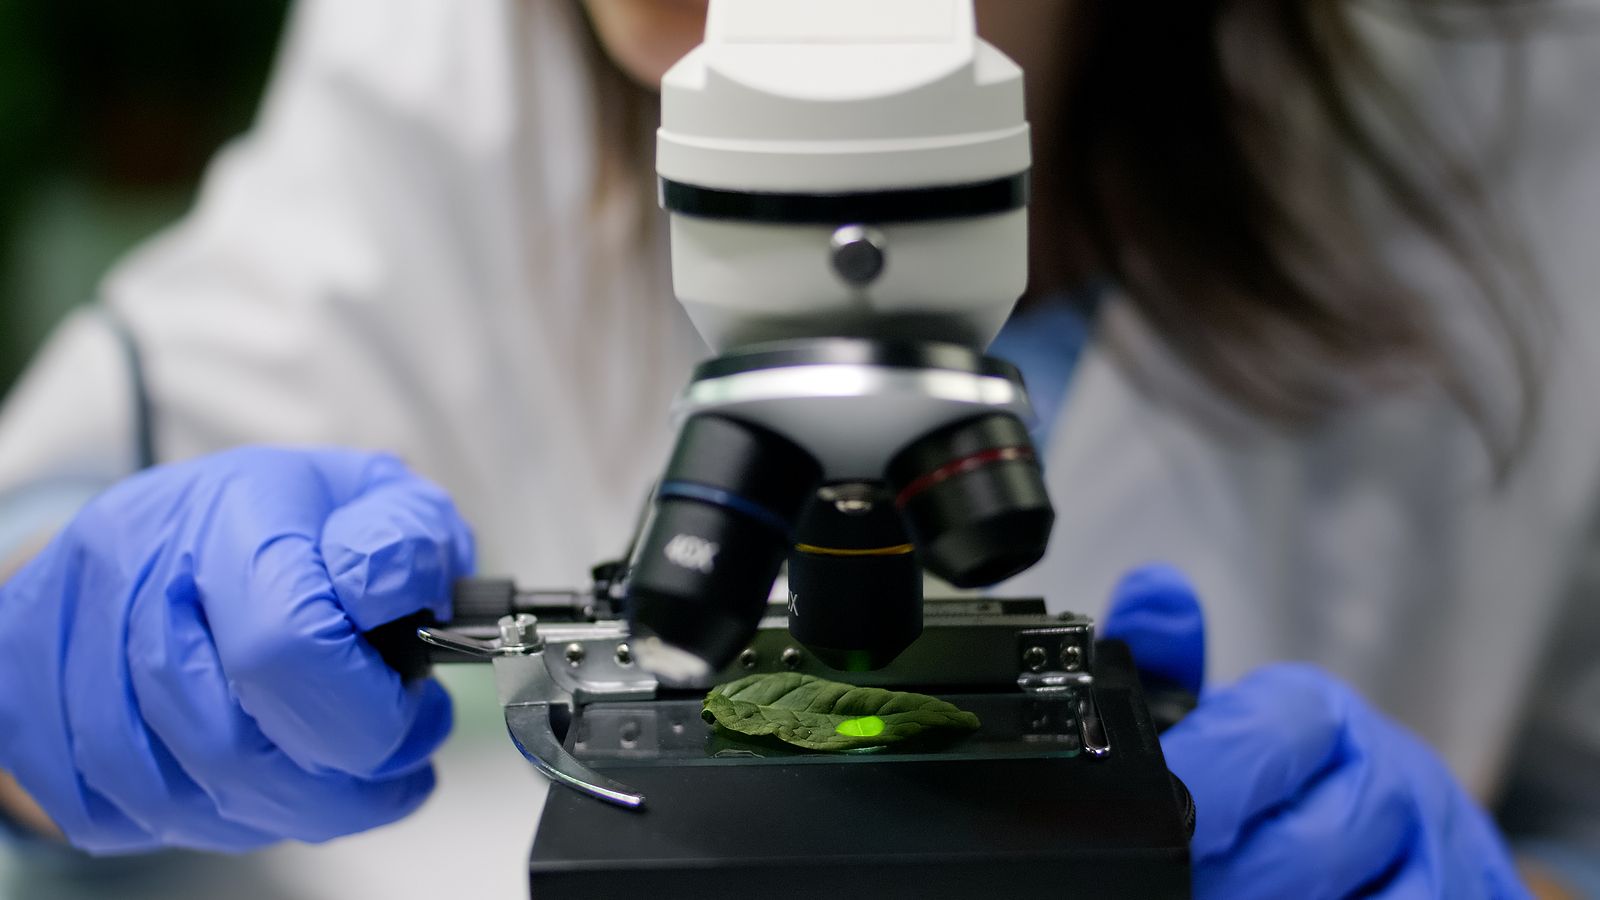 La UMU describe tres nuevas especies de plantas desconocidas para la ciencia